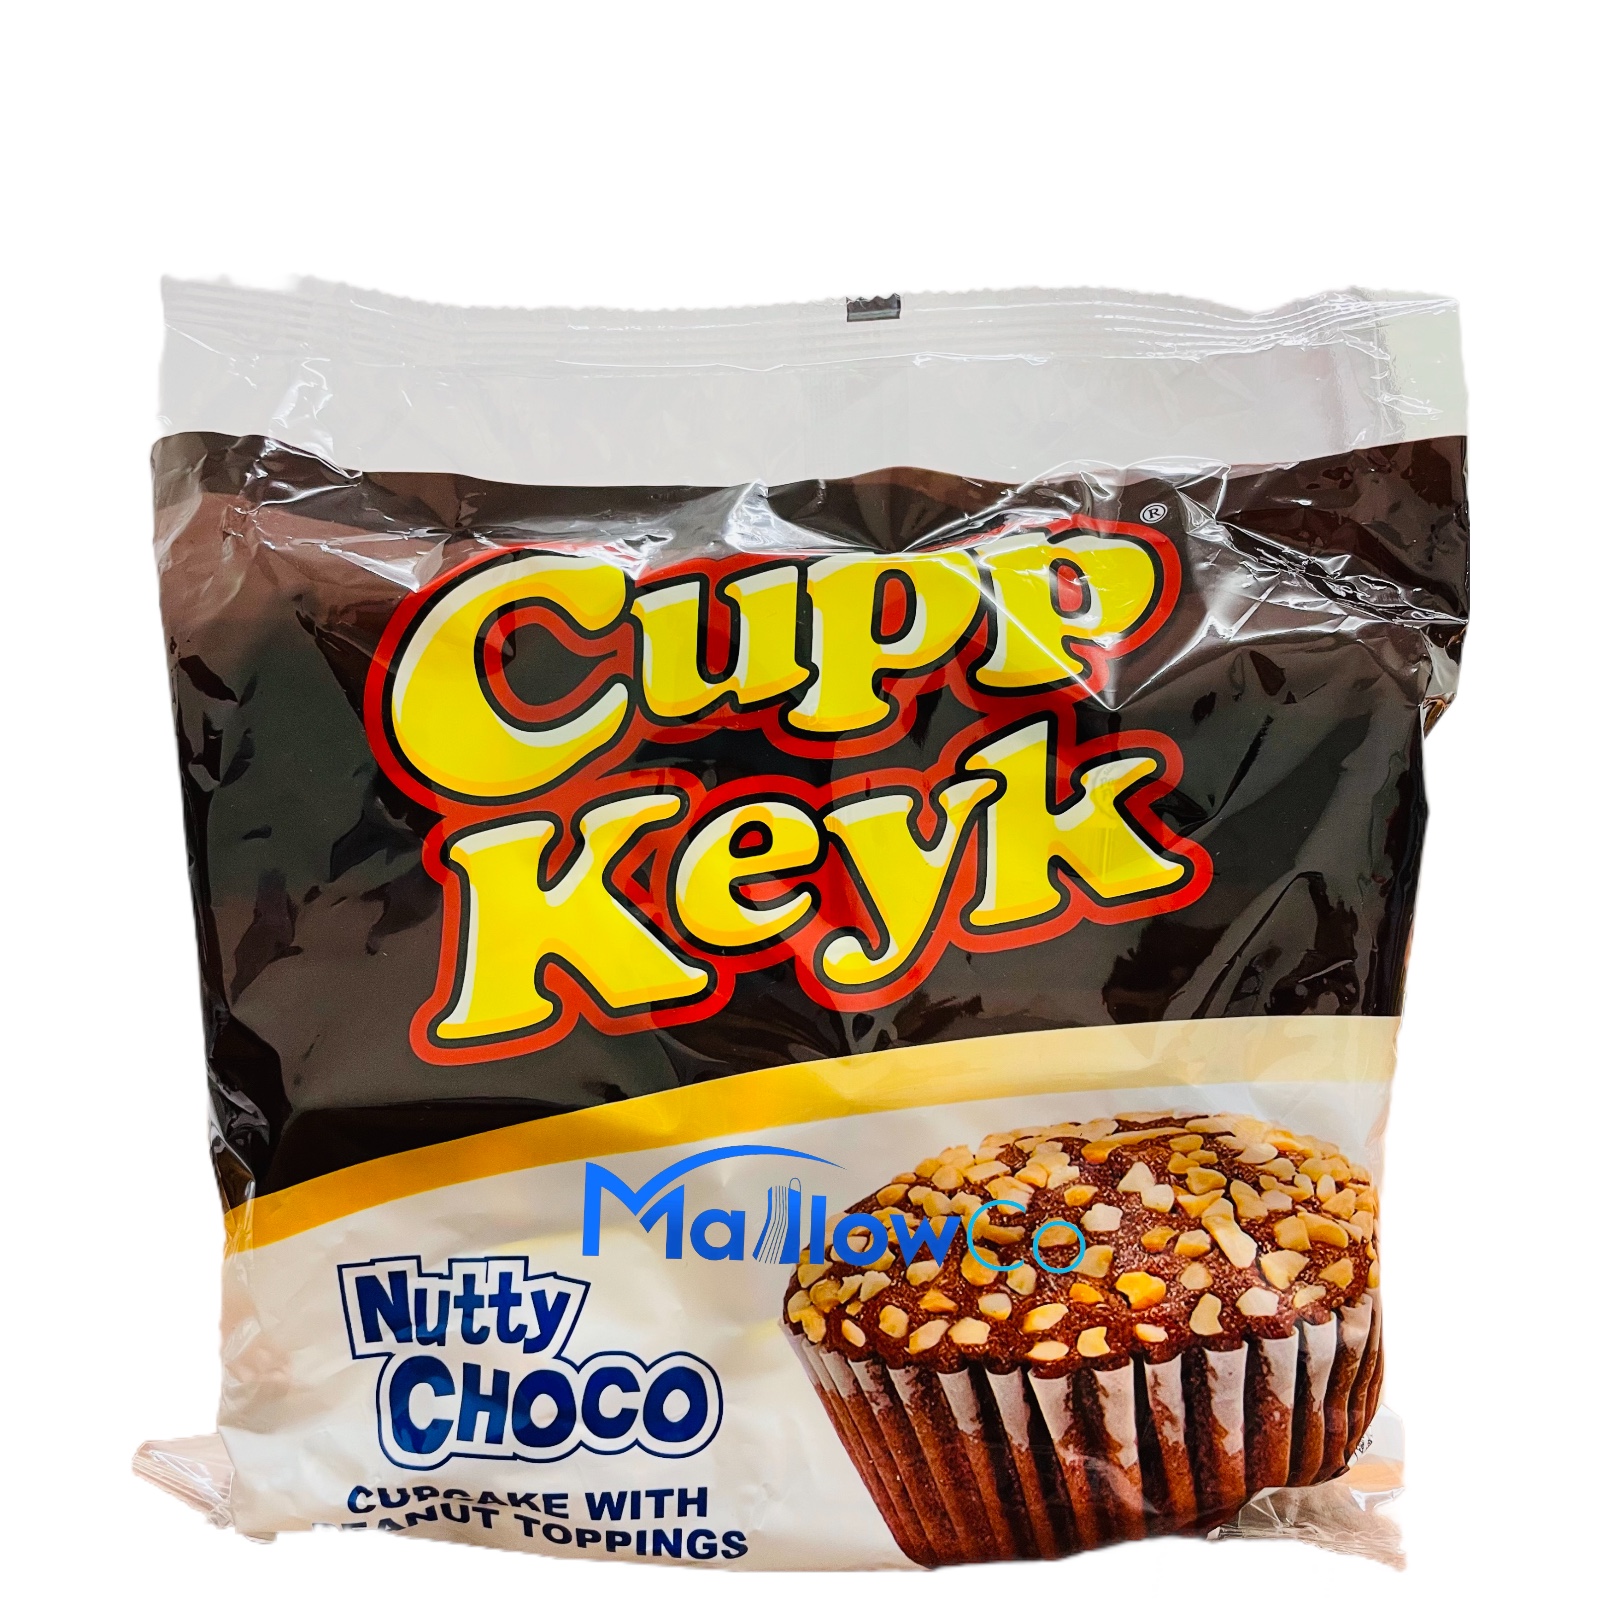 Cupp Keyk Nutty Choco Cake